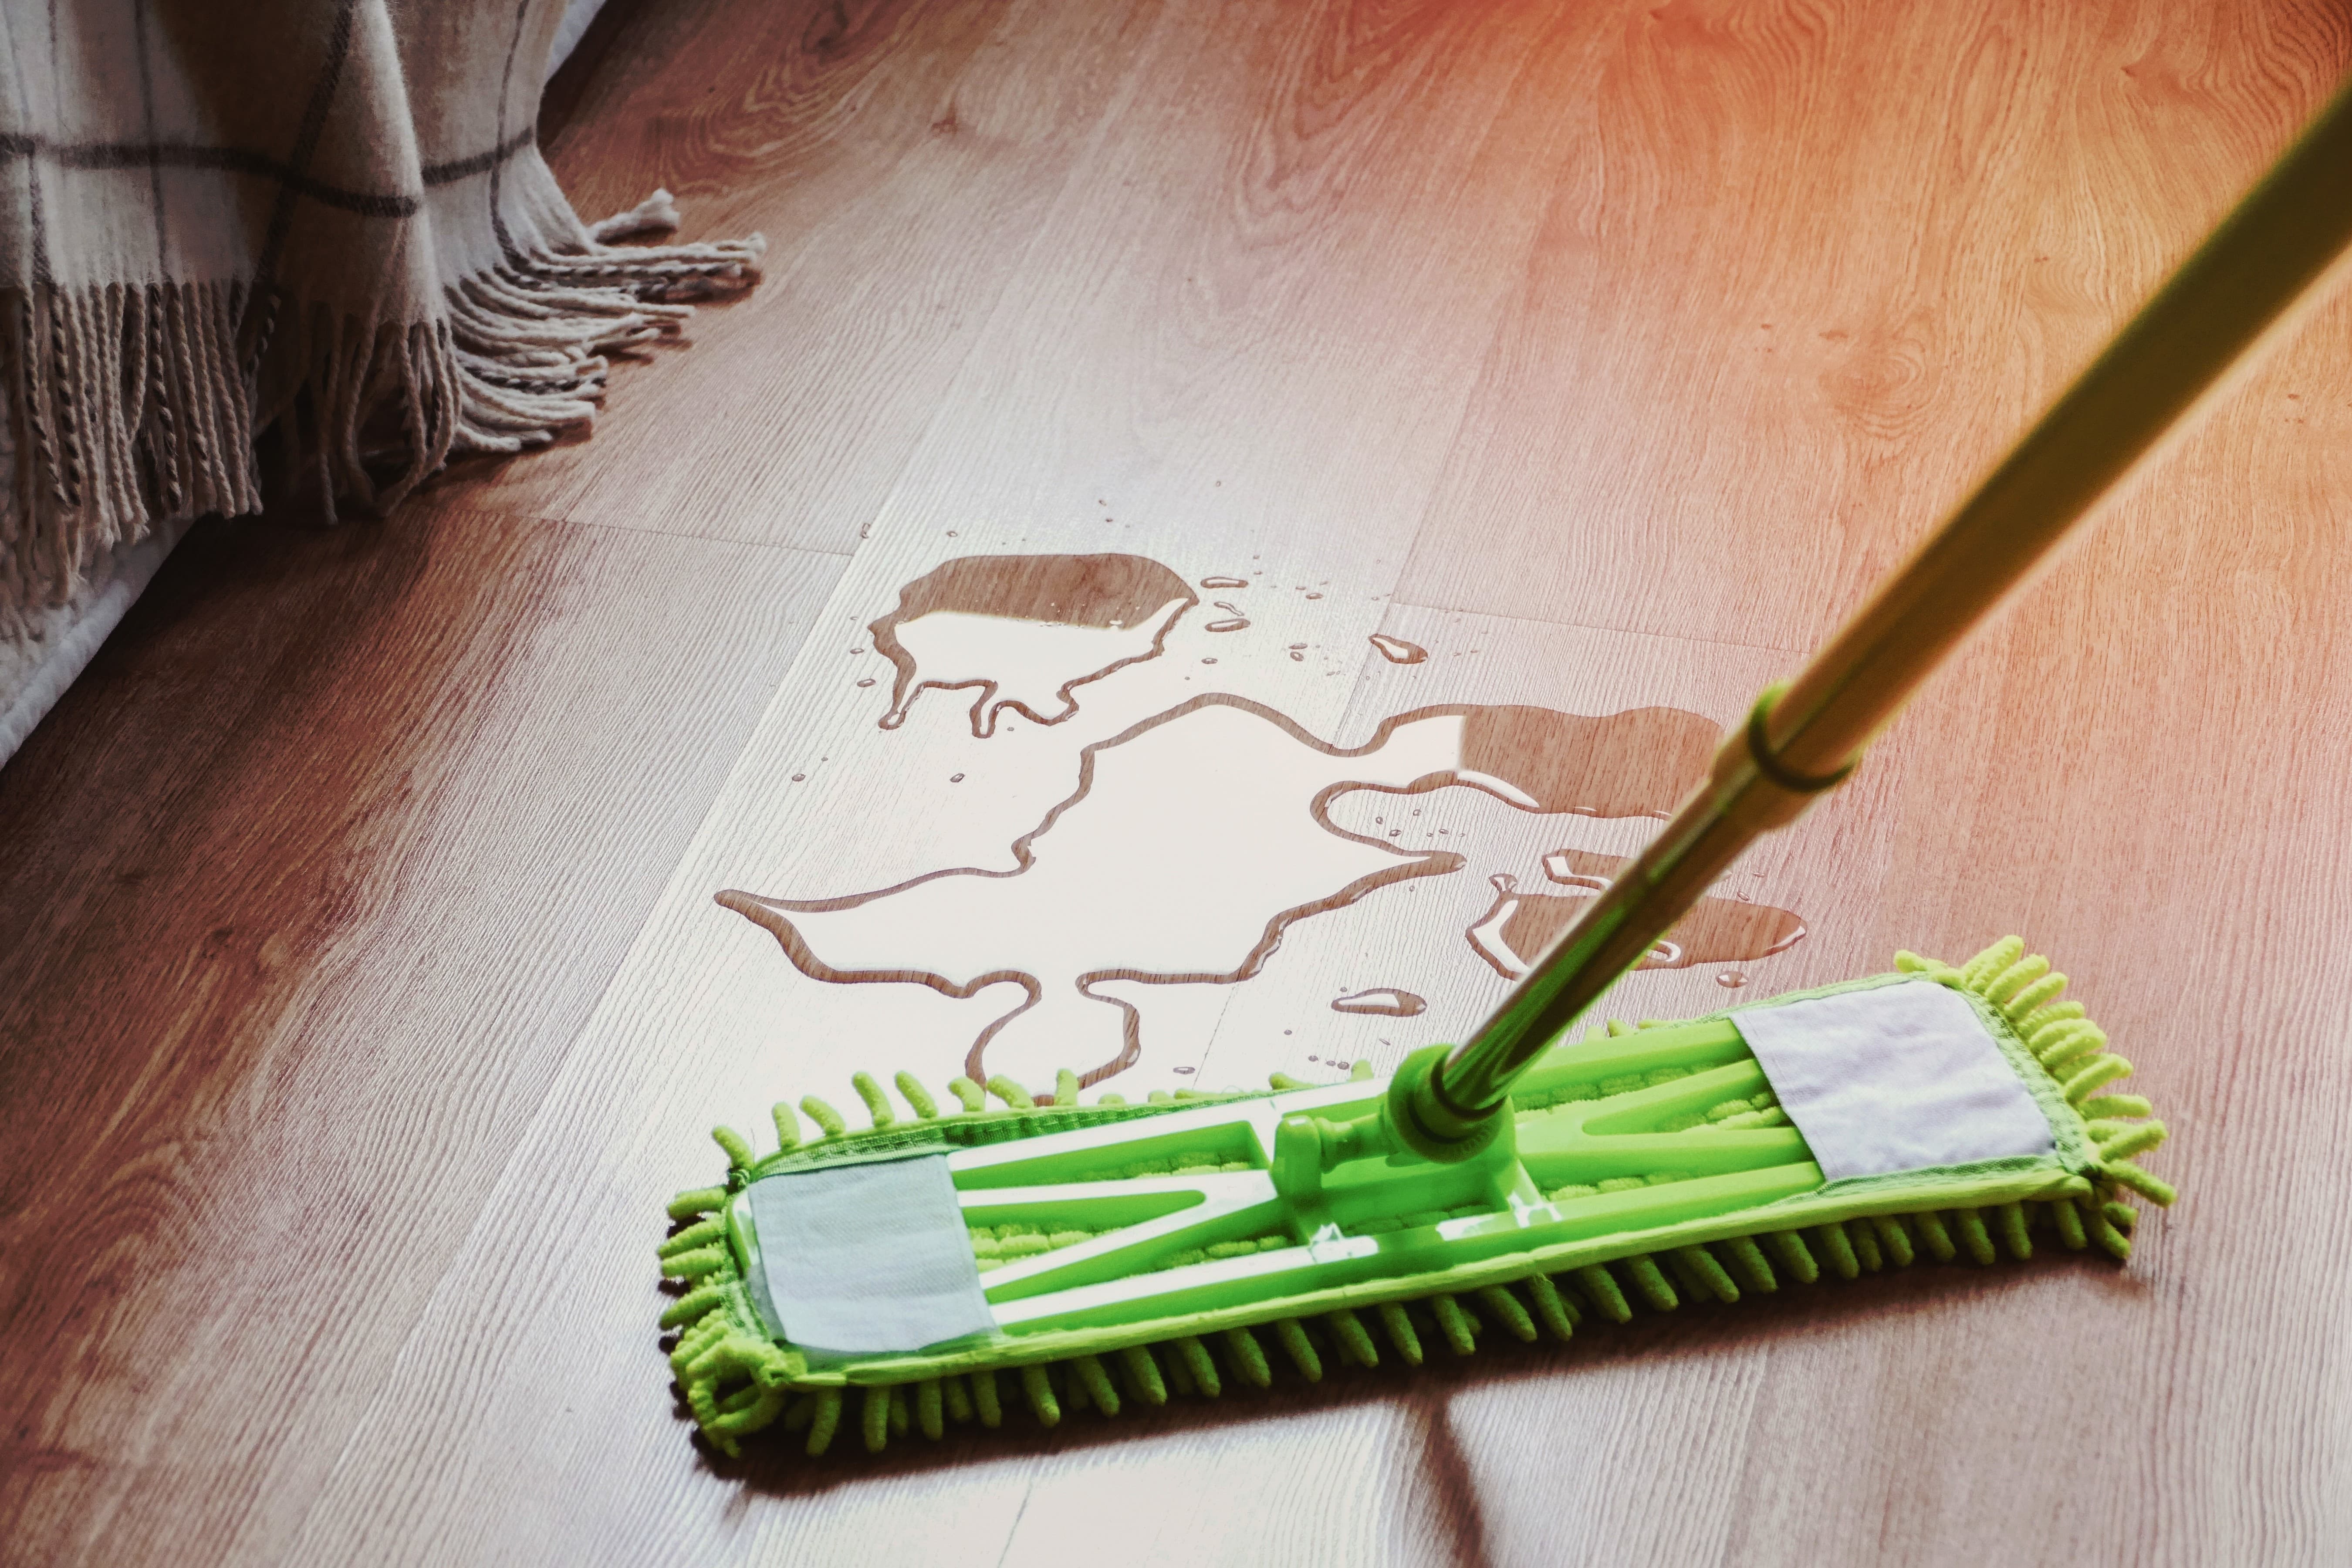 Imagem de um mop verde limpando o piso de madeira com xixi de cachorro.